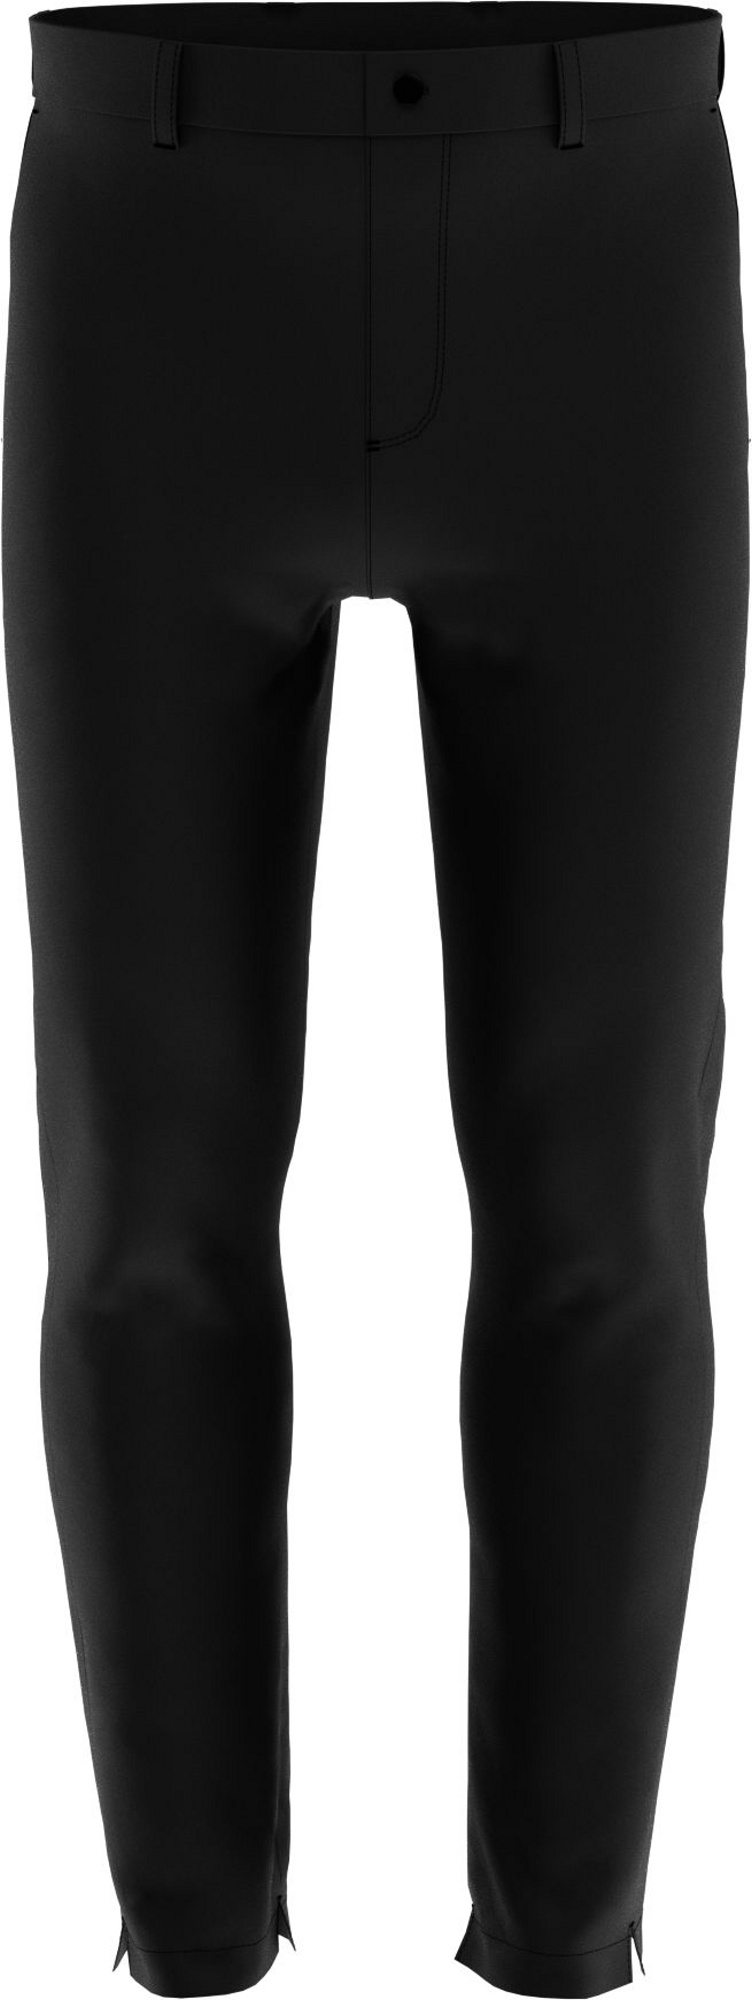 Callaway Water Resistant zateplené pánské golfové kalhoty, černé, vel. 40/32